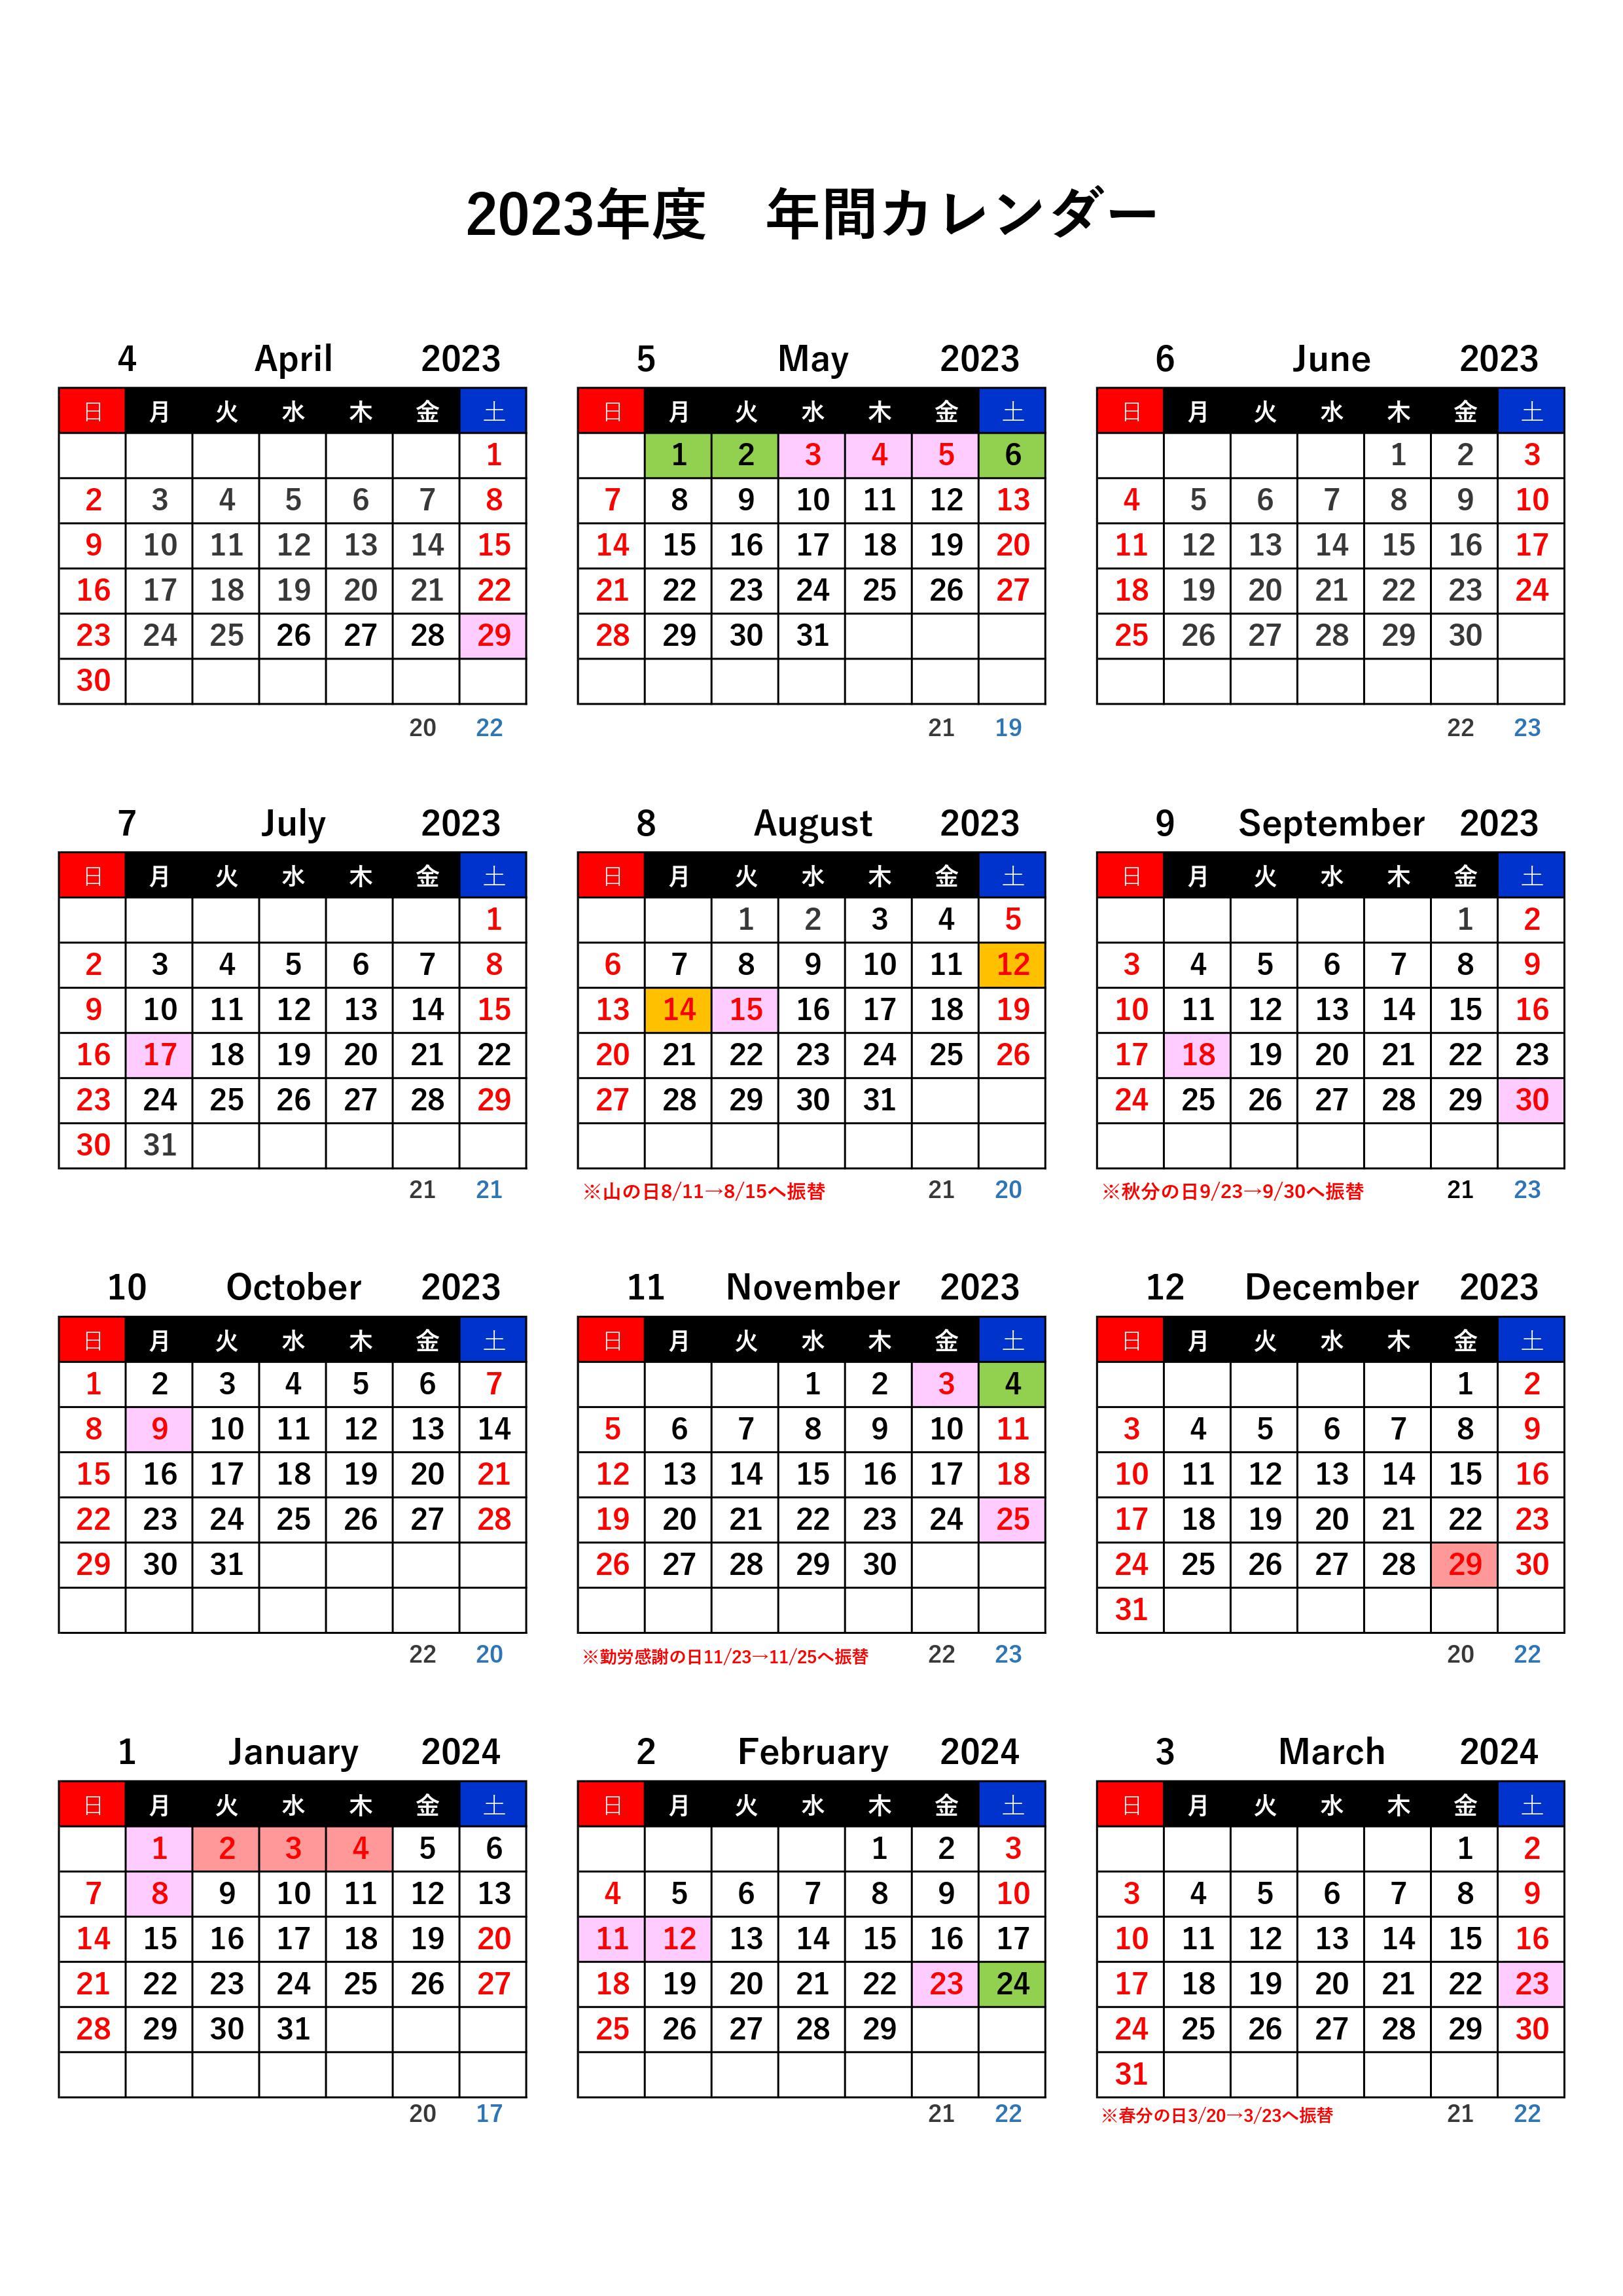 コピー2023年度カレンダー (1).jpg